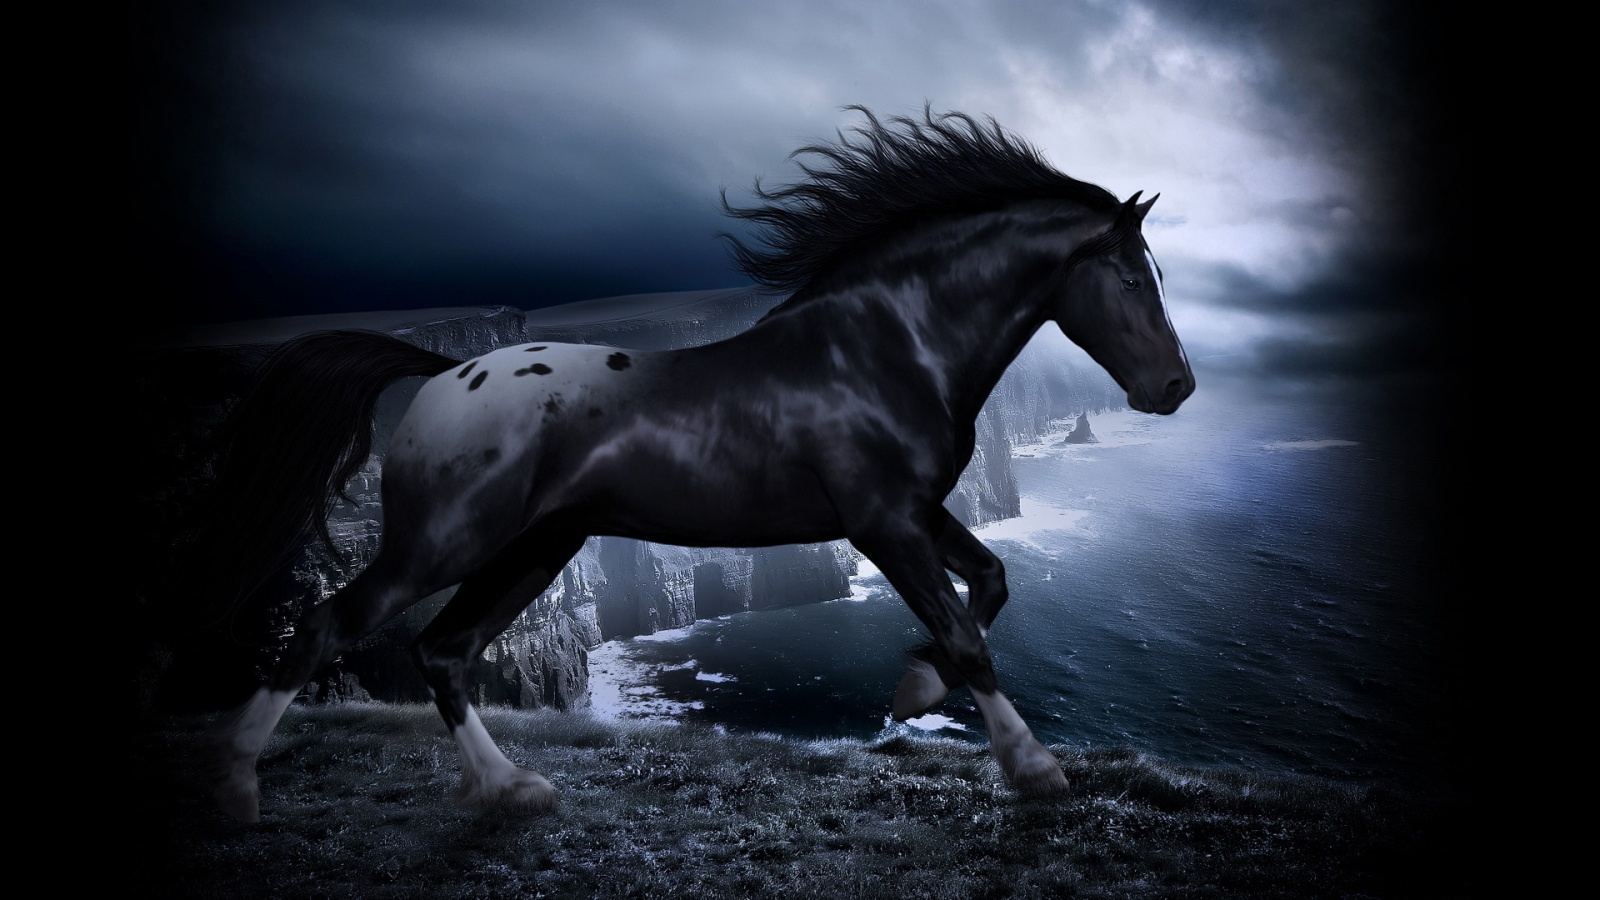 Horse Wallpaper Desktop - Black Horses Wallpaper Hd - 1600x900 Wallpaper -  